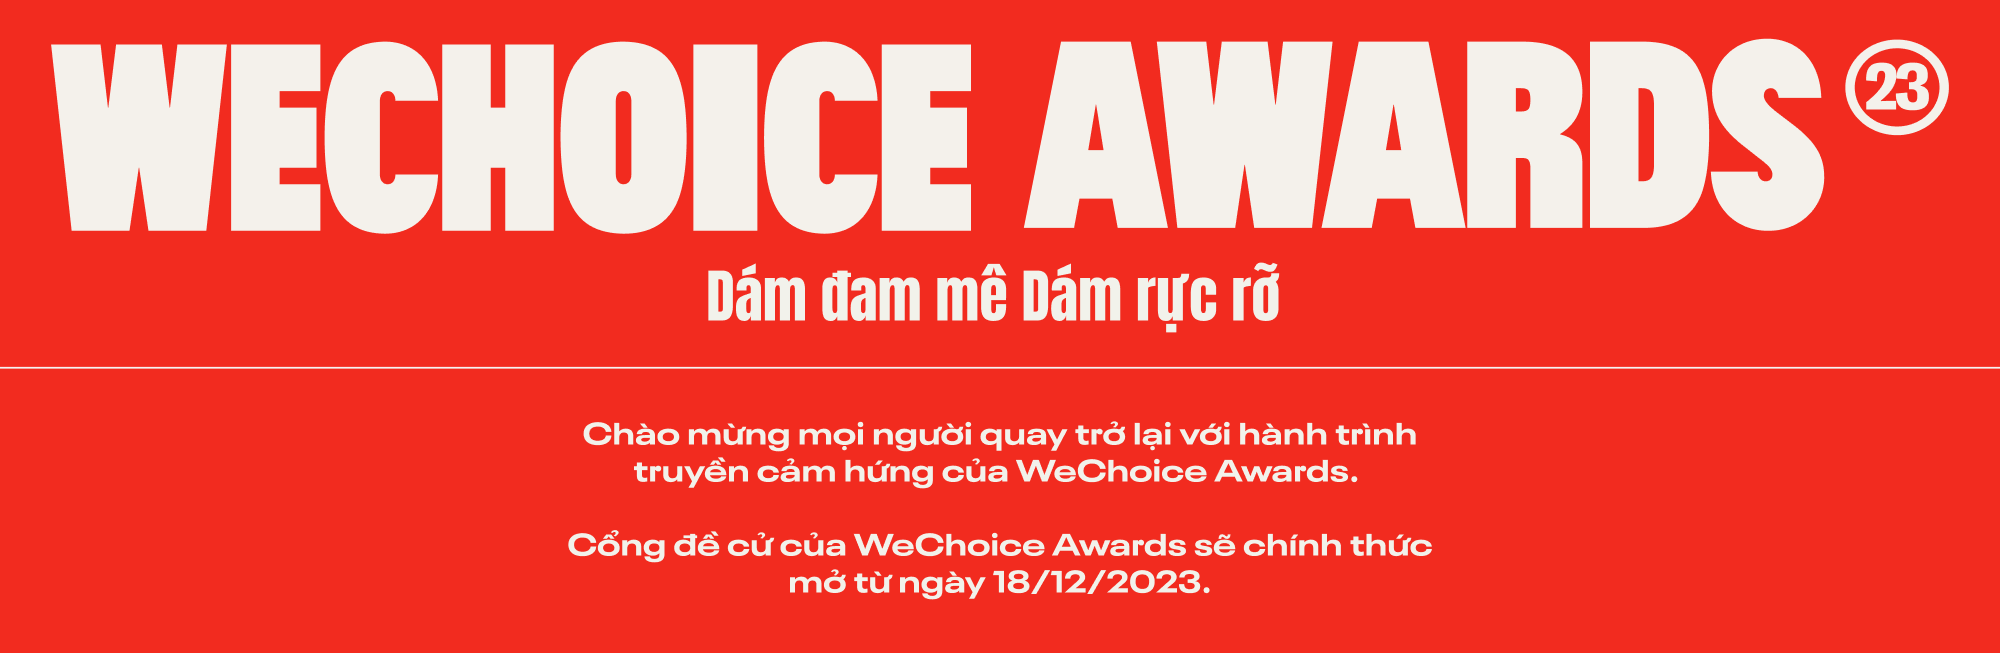 WeChoice Awards 2023: Những kẻ dám mơ, dám đi tới và bừng lên rực rỡ - Ảnh 12.